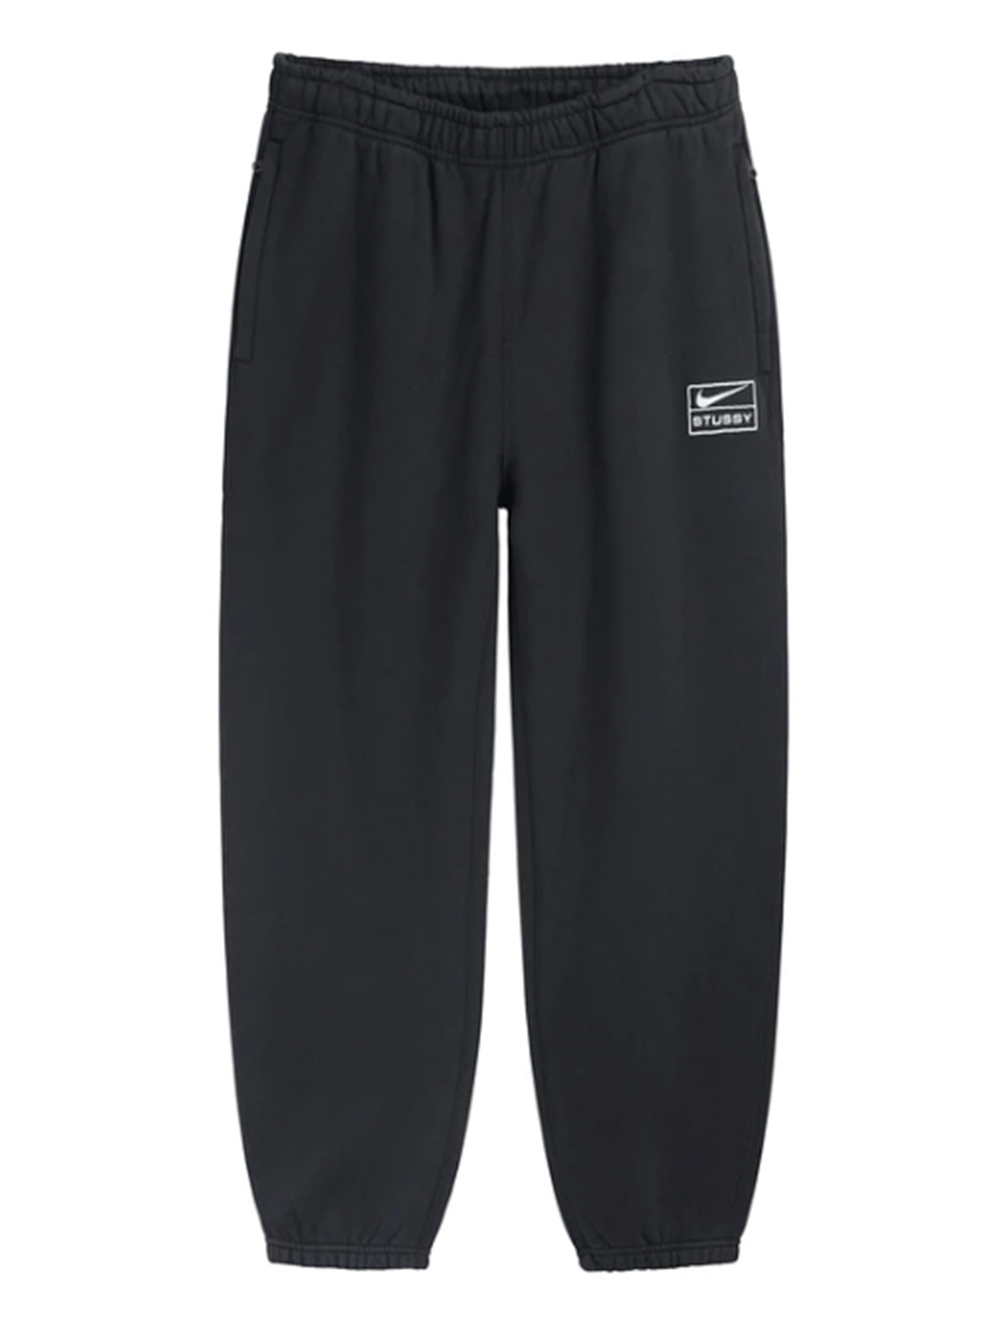 送料無料】 Stussy Nike NRG Washed Fleece Pant Black asakusa.sub.jp